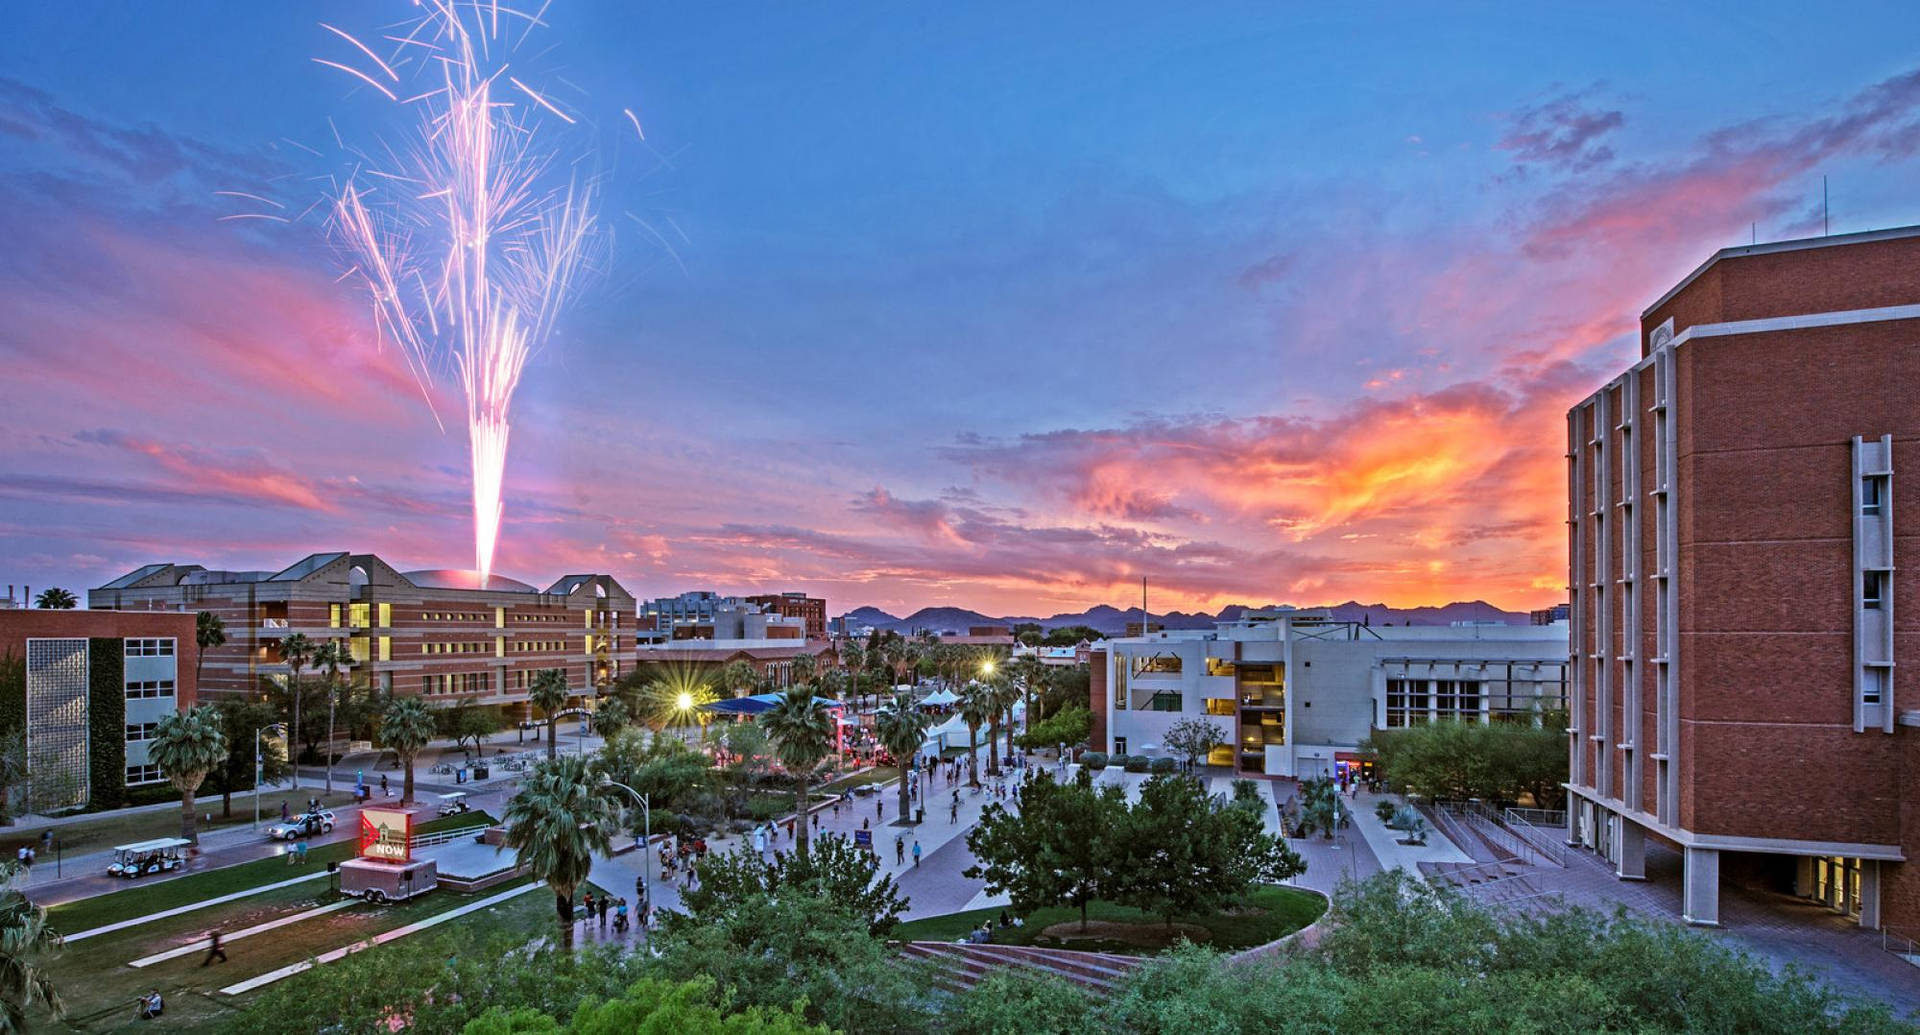 University Of Arizona Fireworks Background